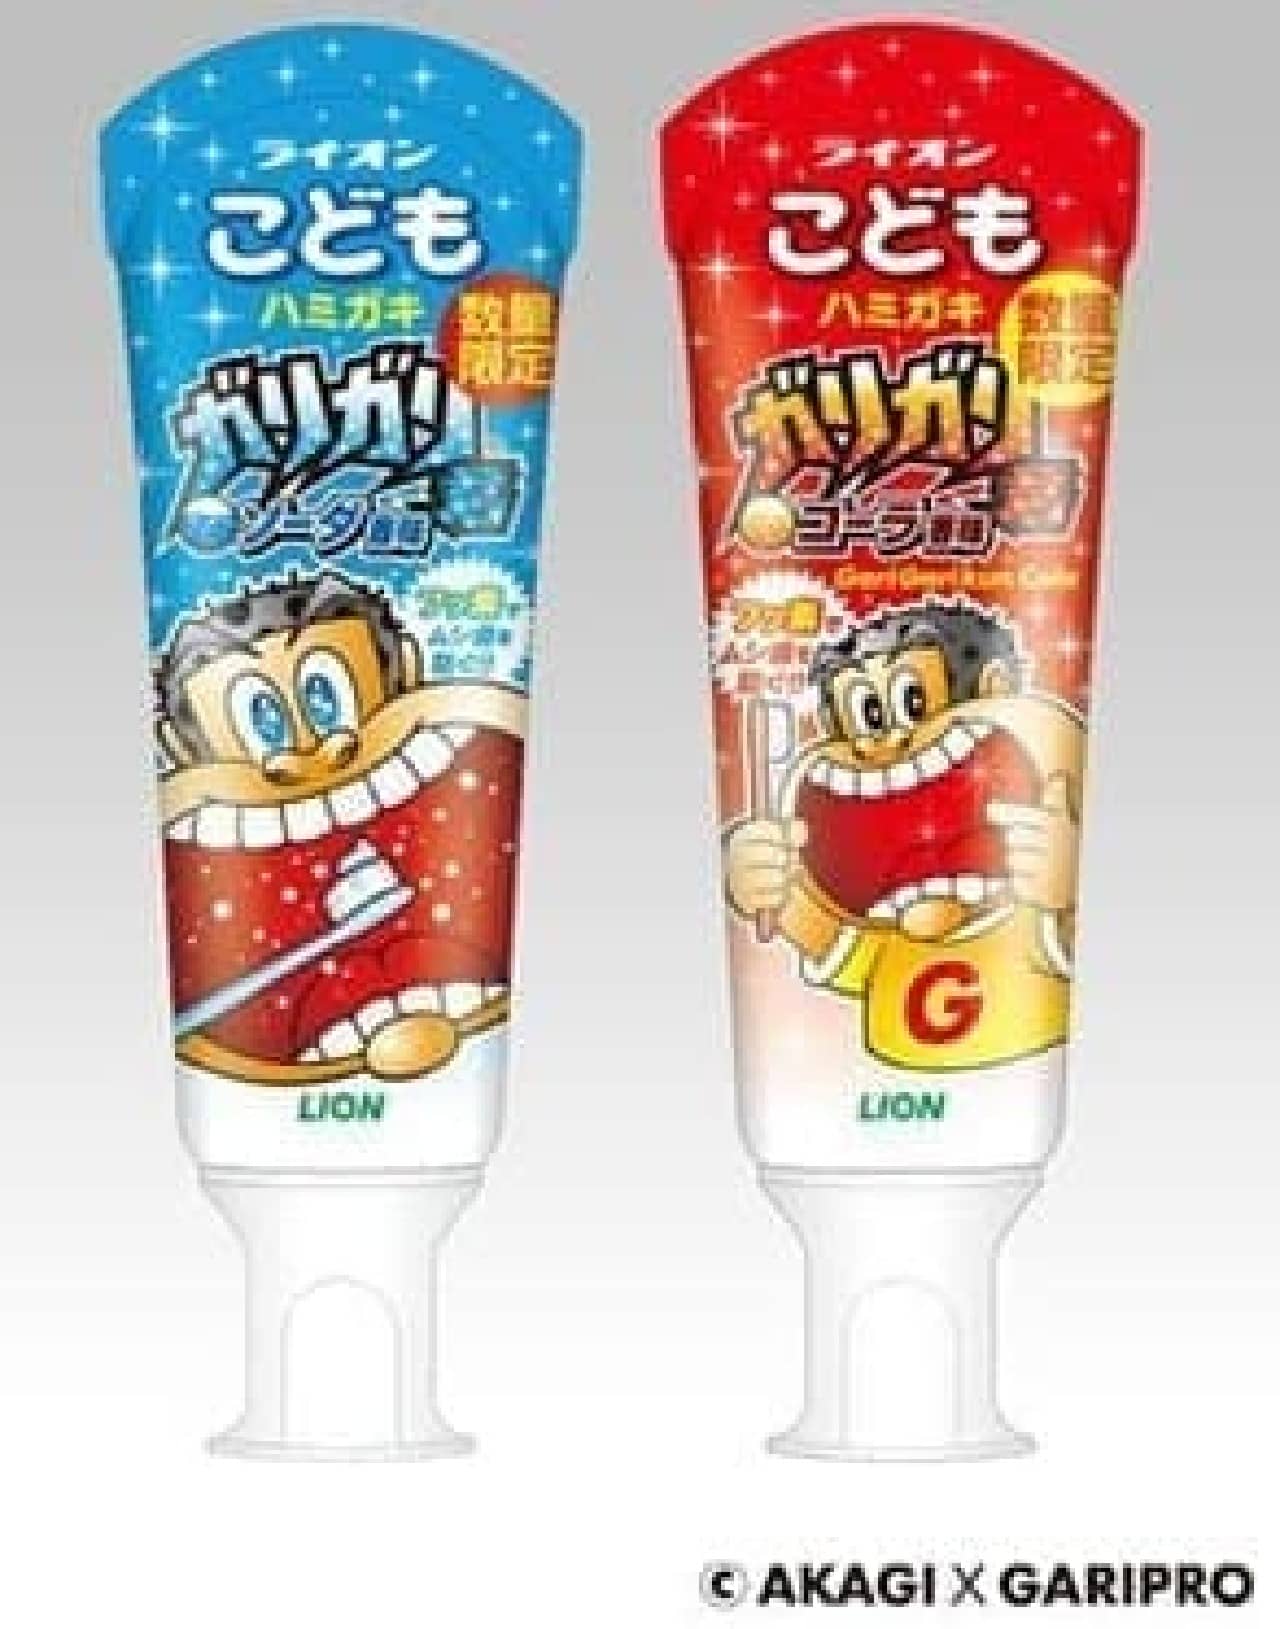 Limited quantity "Lion Children's Toothpaste Garigari-kun Soda Flavor"